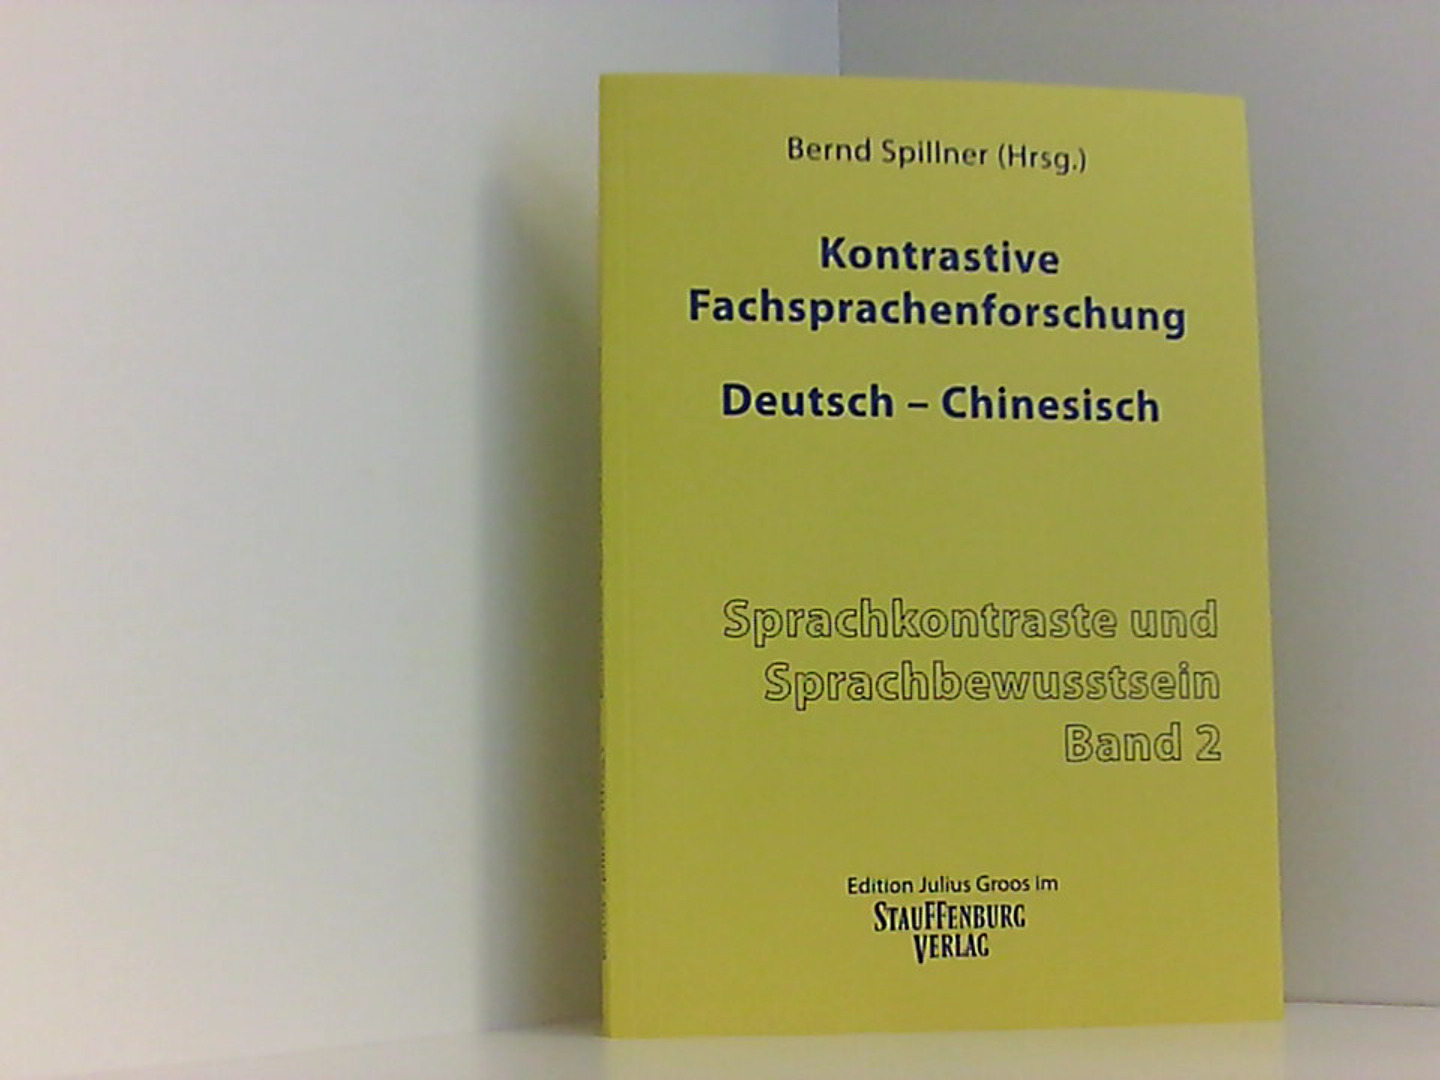 Kontrastive Fachsprachenforschung Deutsch - Chinesisch (Sprachkontraste und Sprachbewusstsein)  1 - Spillner, Bernd